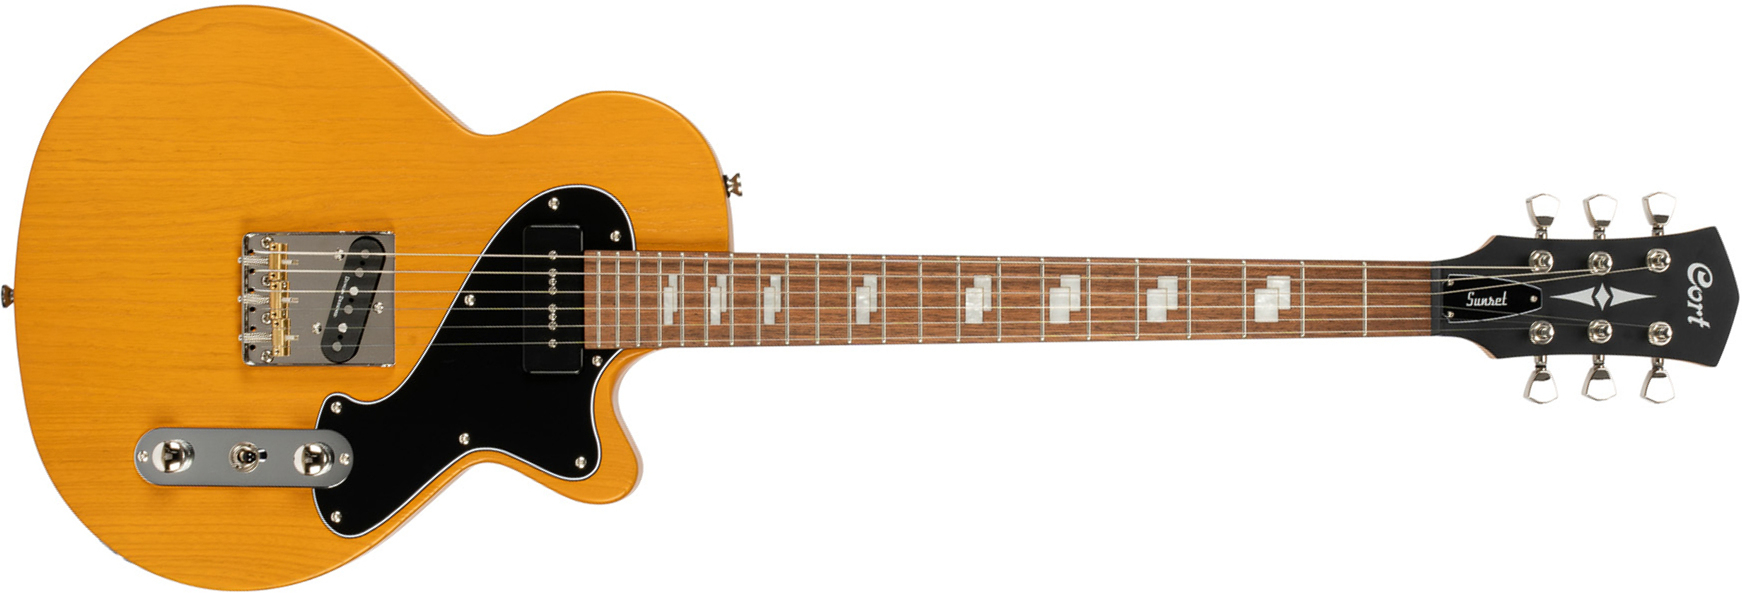 Cort Sunset Tc Opmy Ss Ht Jat - Open Pore Mustard Yellow - Enkel gesneden elektrische gitaar - Main picture